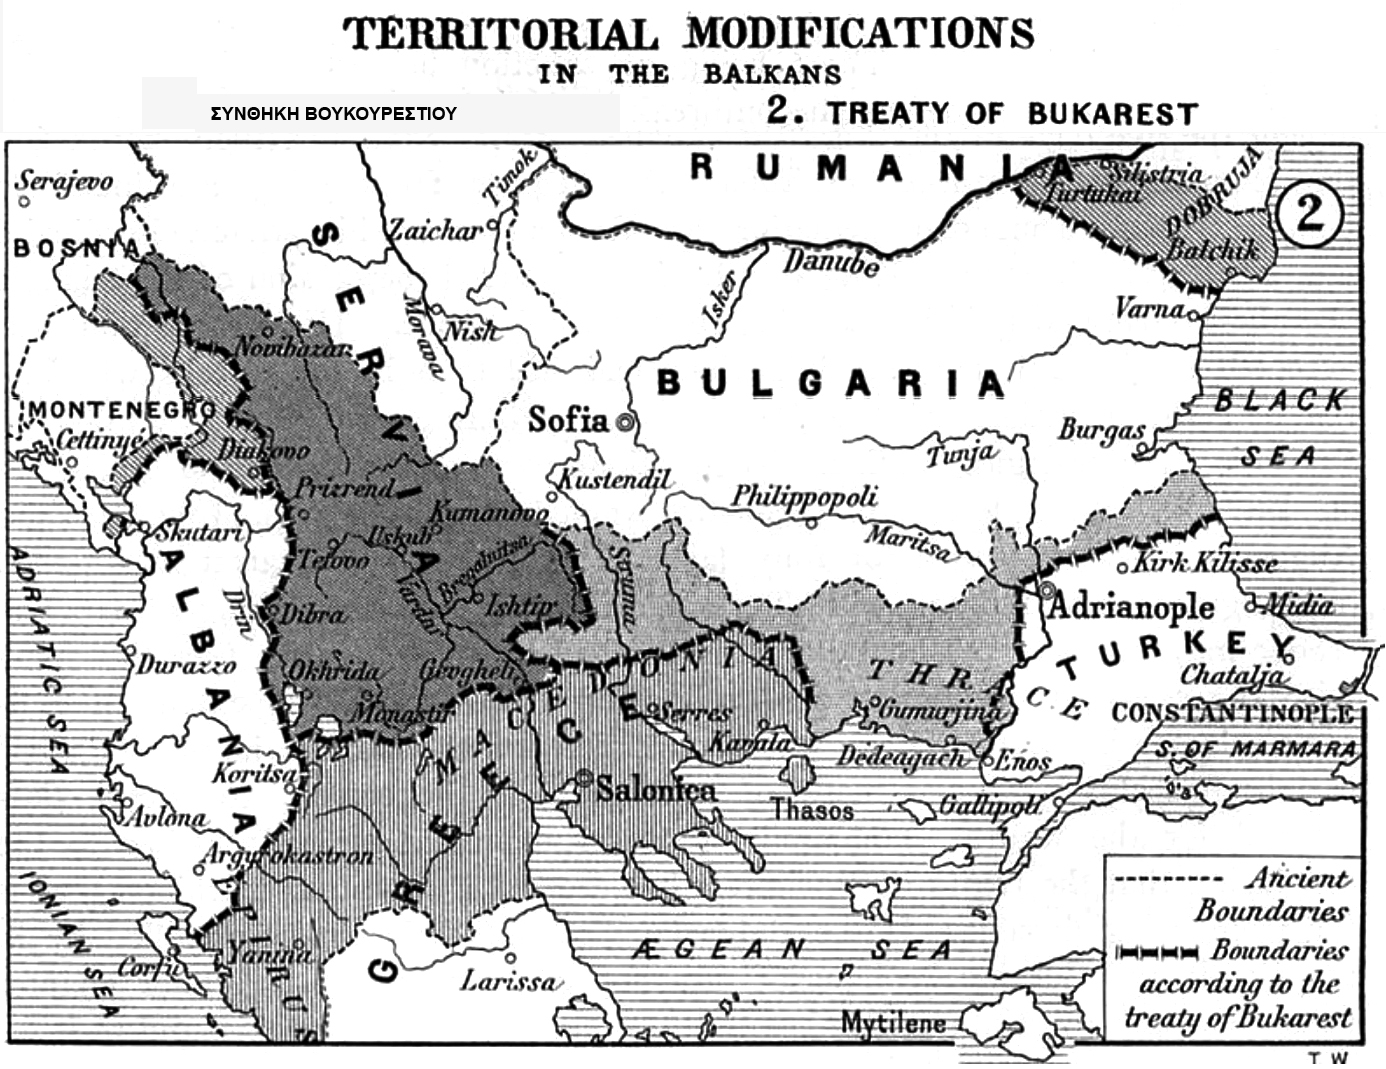 Πριν από 110 χρόνια, τις 10 Αυγούστου, υπογράφηκε η Συνθήκη του Βουκουρεστίου, που ρύθμισε τα σύνορα στα Βαλκάνια